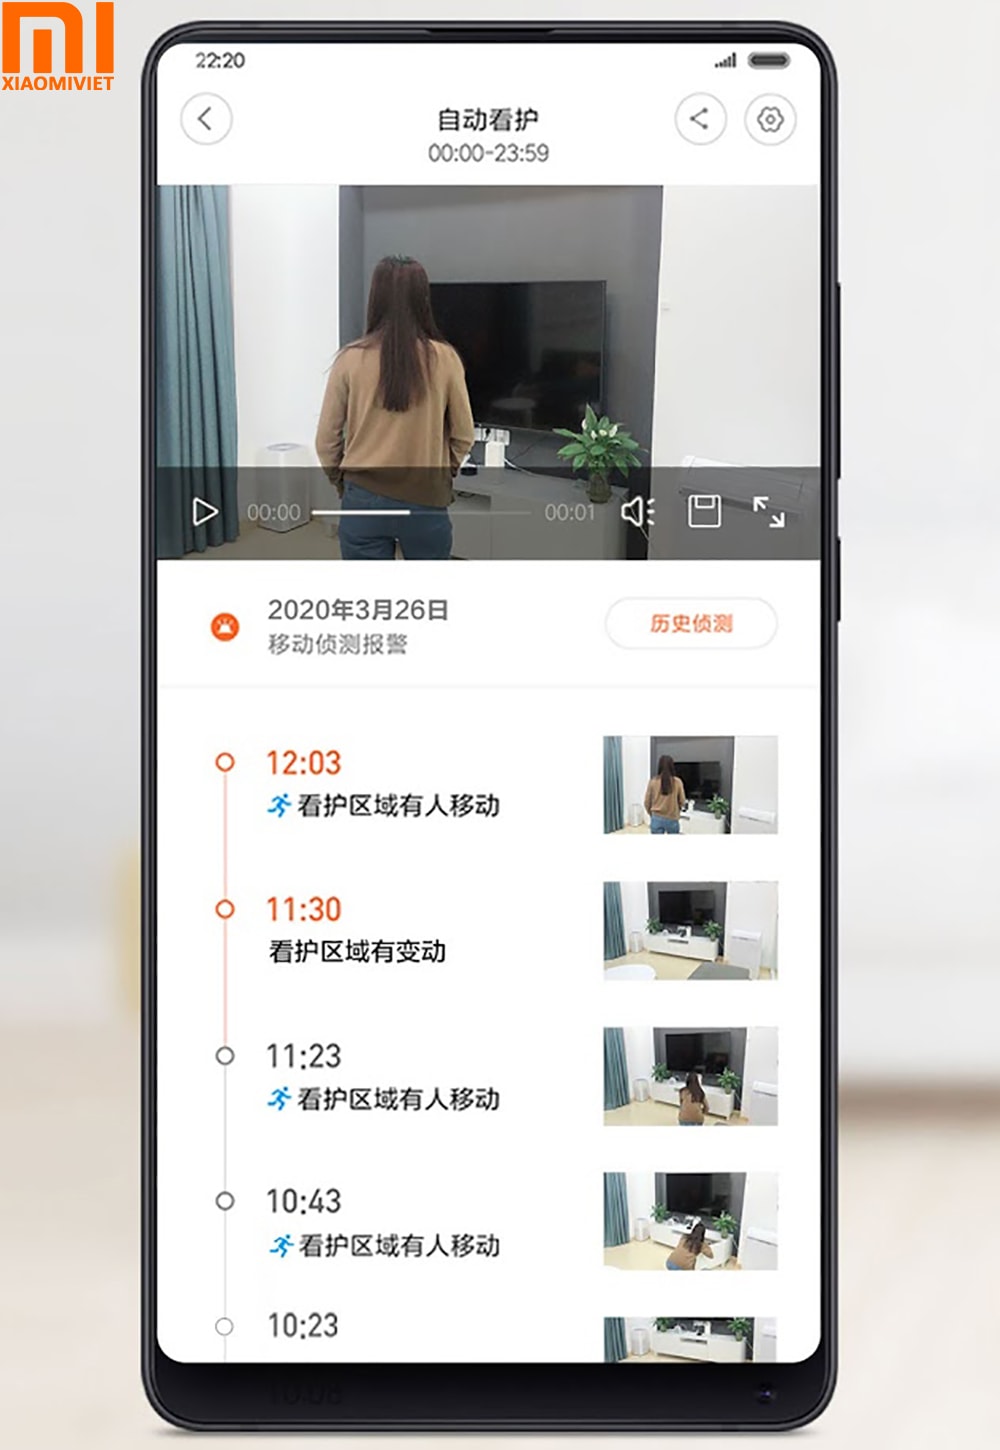 Camera Xiaomi Mi 360 Độ 2K cho khả năng nhận diện và cảnh báo chính xác 